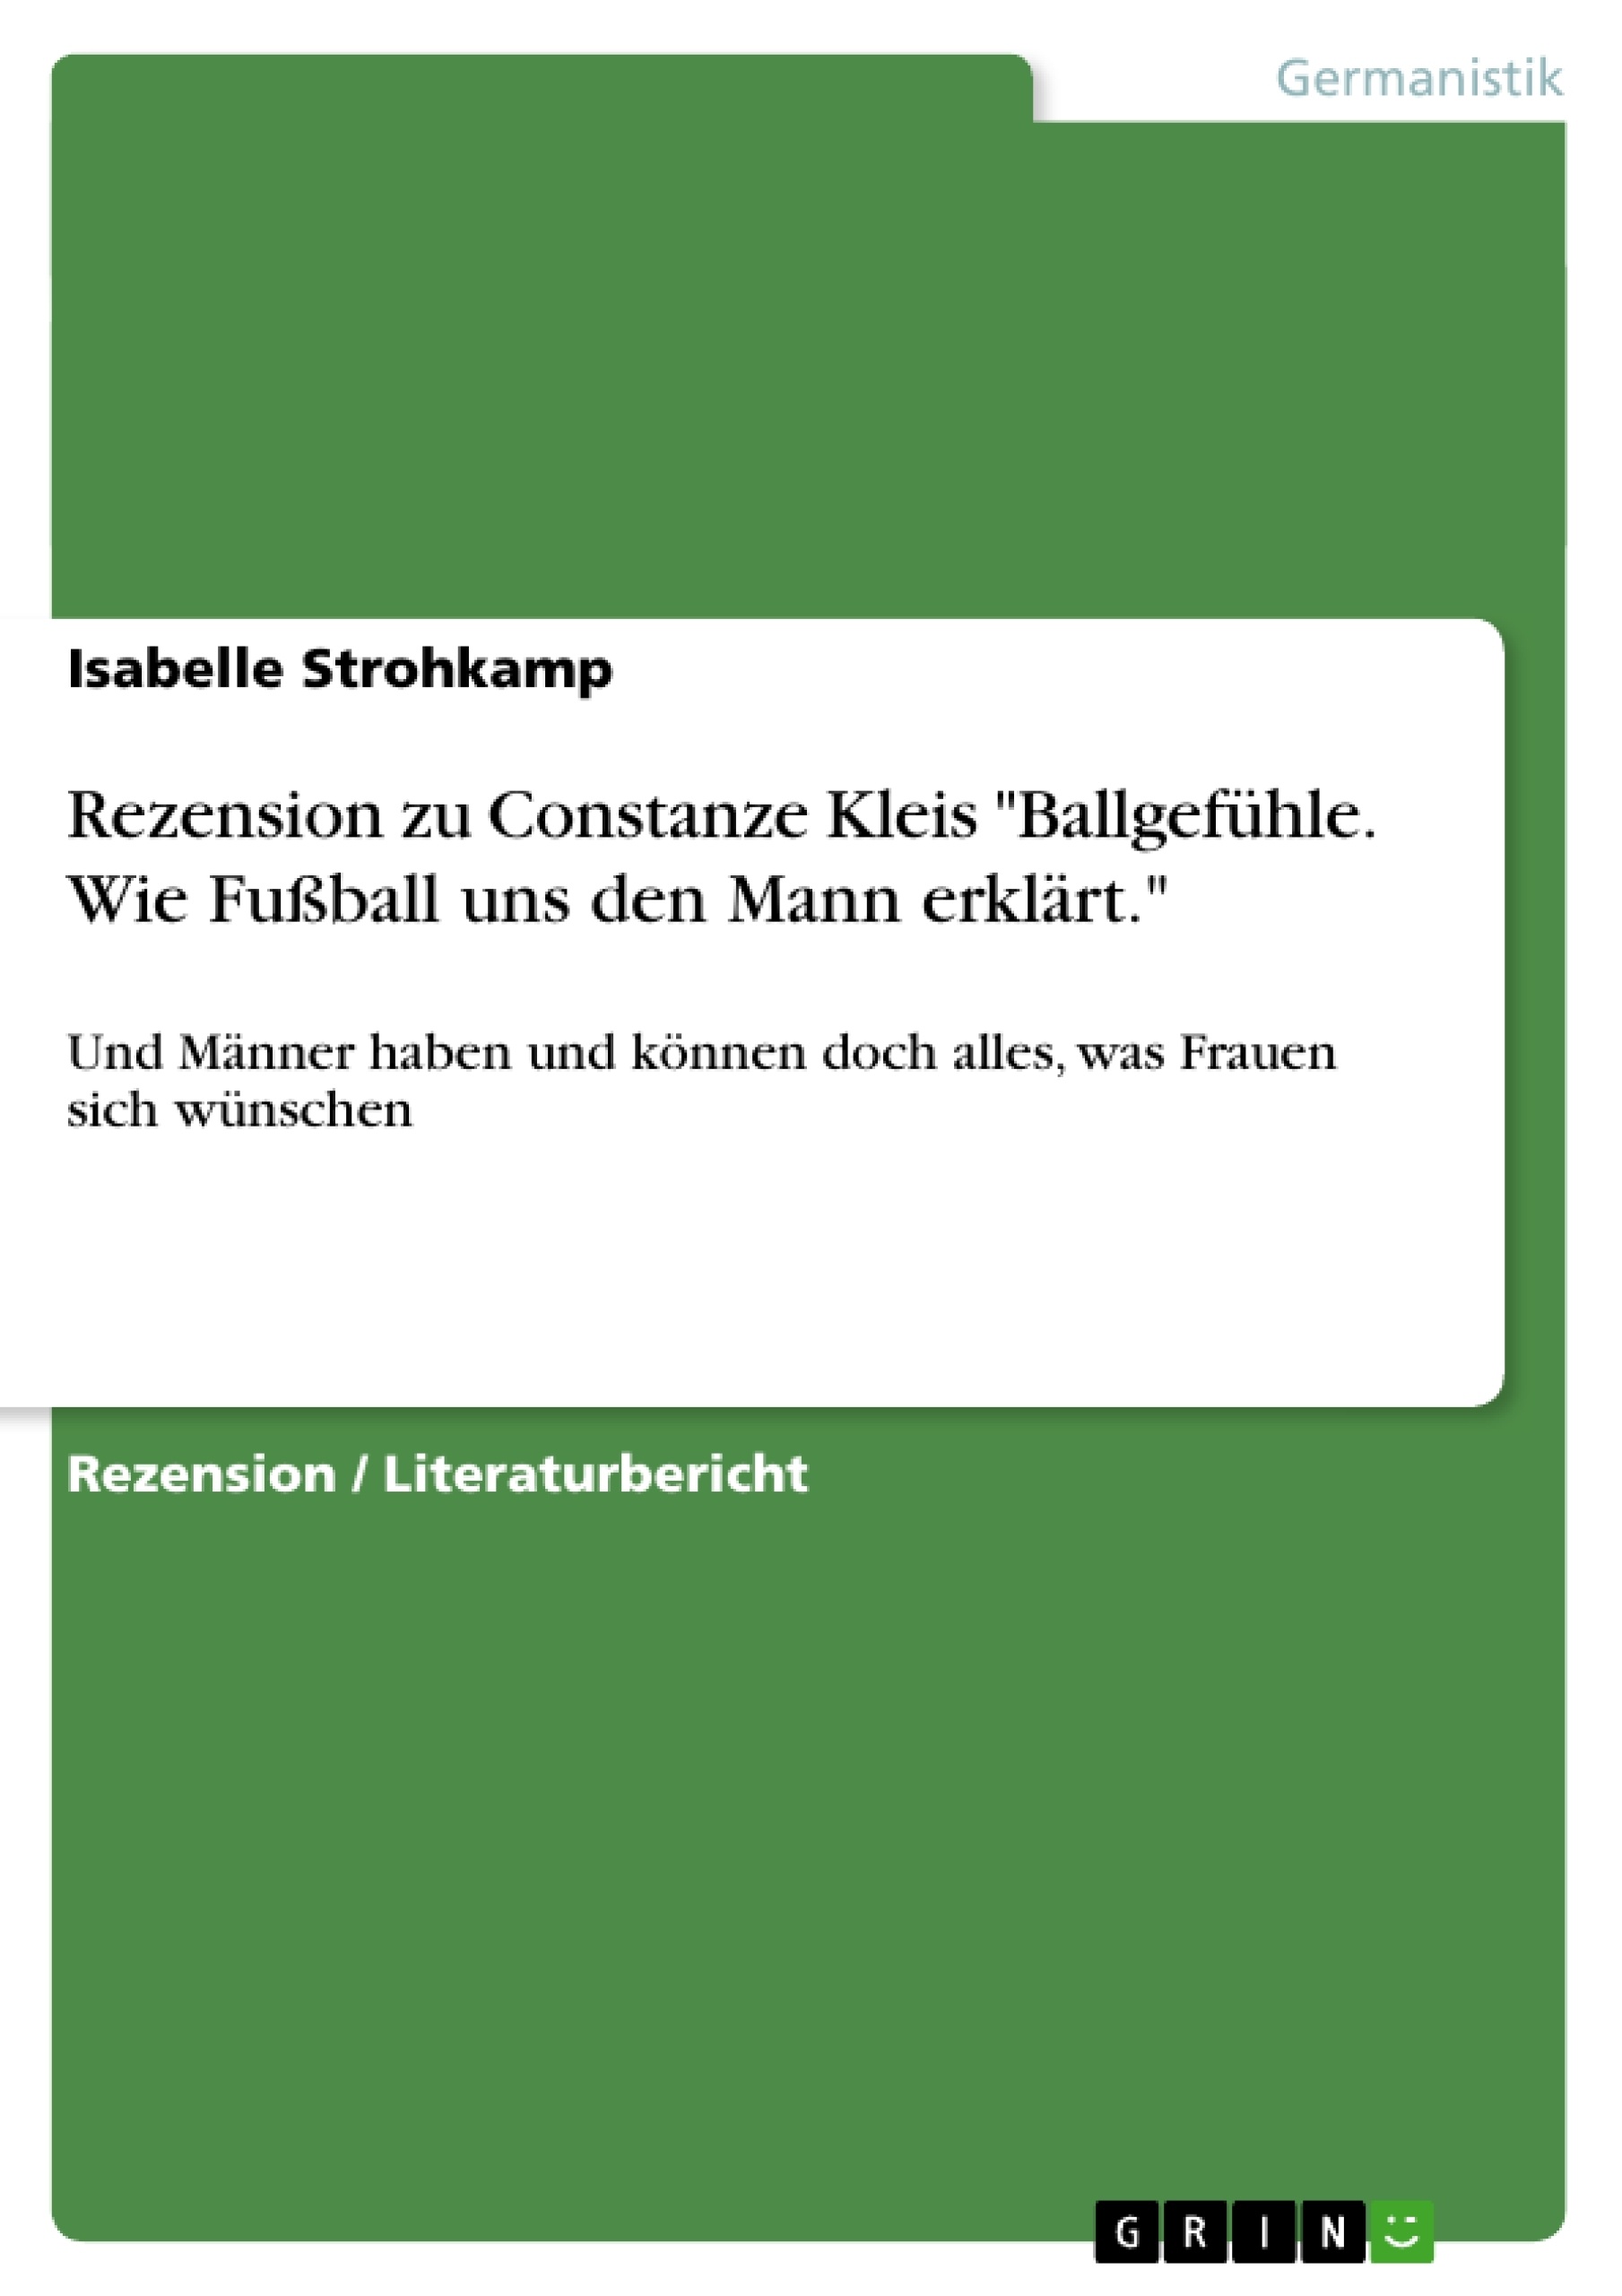 Título: Rezension zu Constanze Kleis "Ballgefühle. Wie Fußball uns den Mann erklärt."